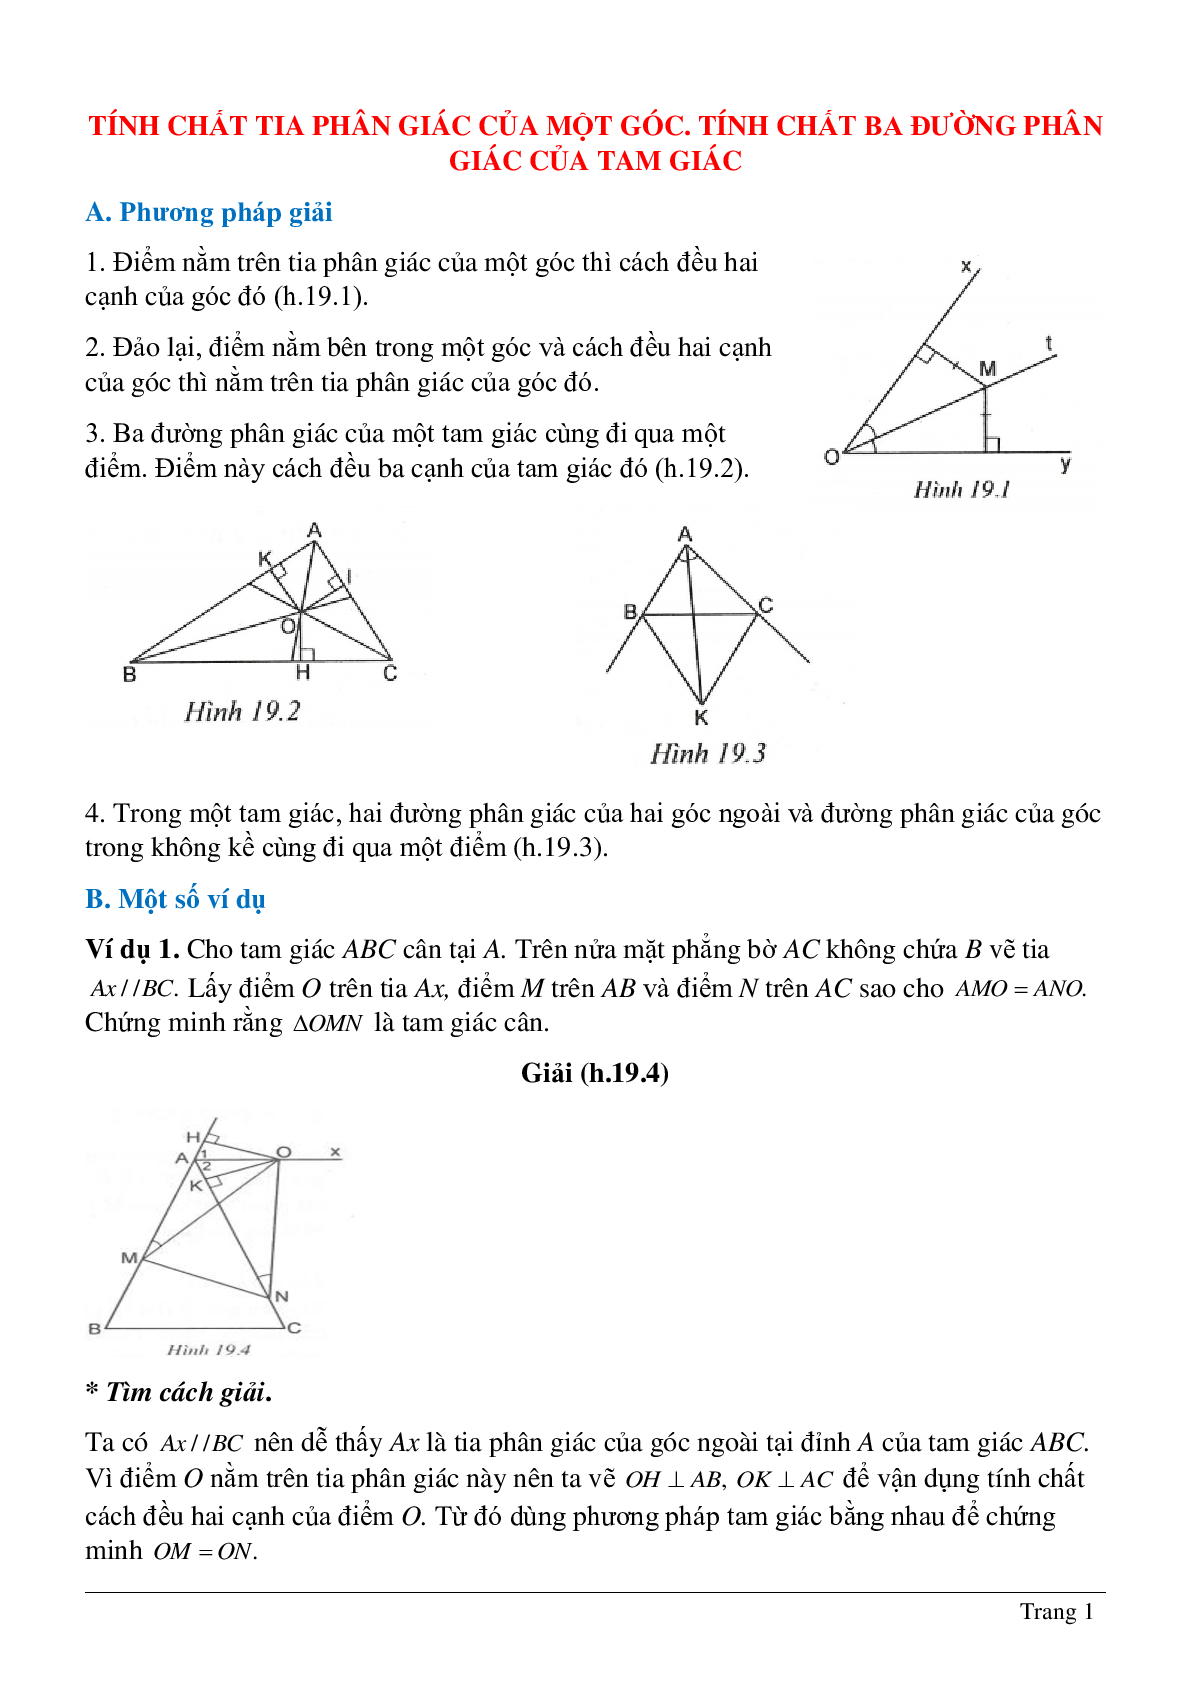 Phương pháp giải và bài tập về Tính chất tia phân giác của một góc - Tính chất ba đường phân giác của tam giác có lời giải (trang 1)